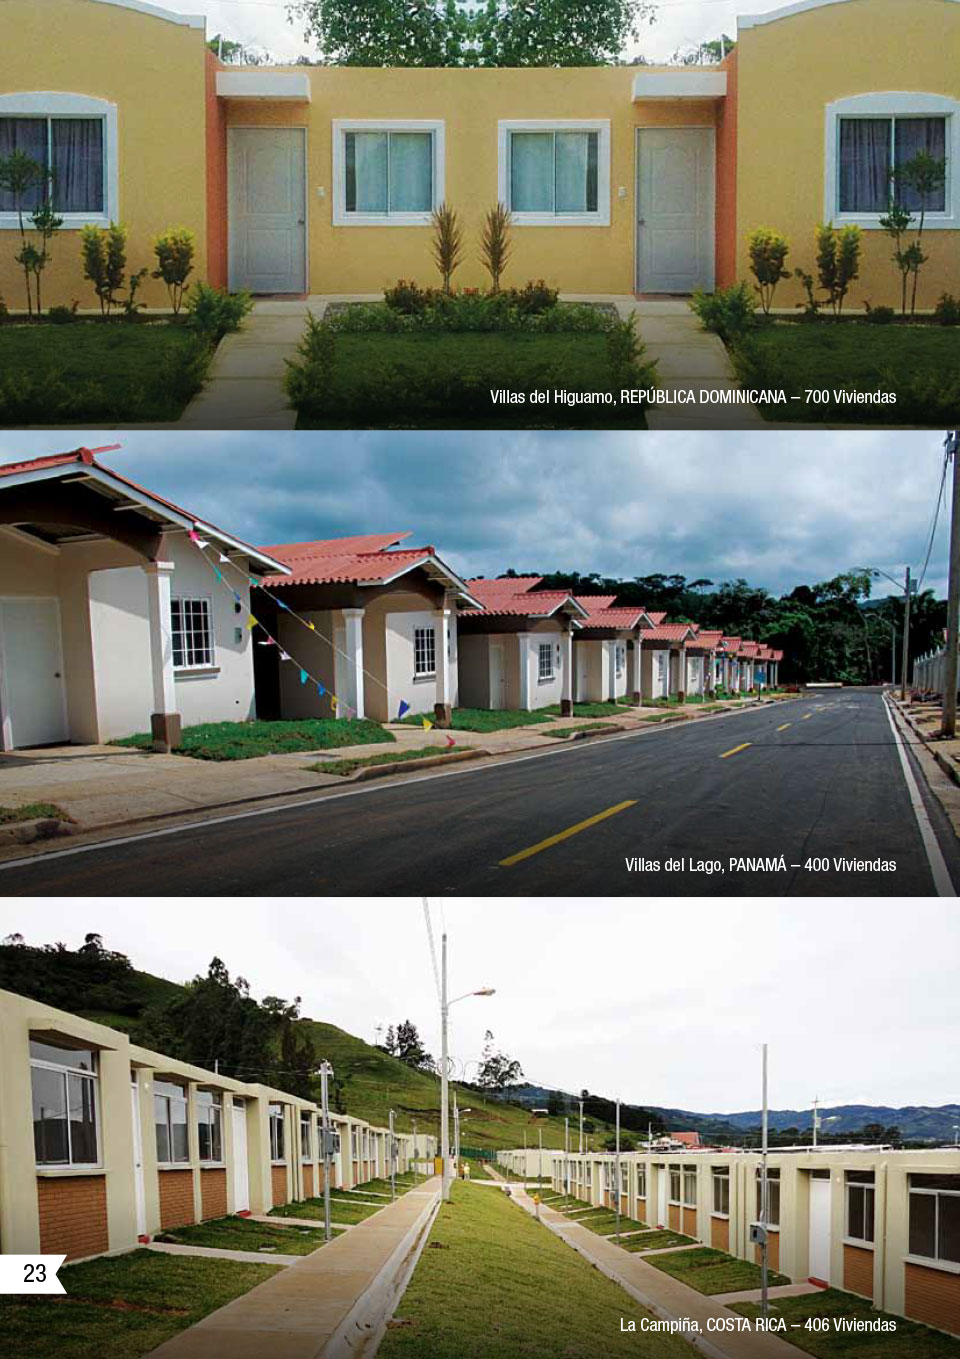 Una imagen que muestra algunos de los proyectos de CEMEX utilizando la solución de viviendas asequibles.